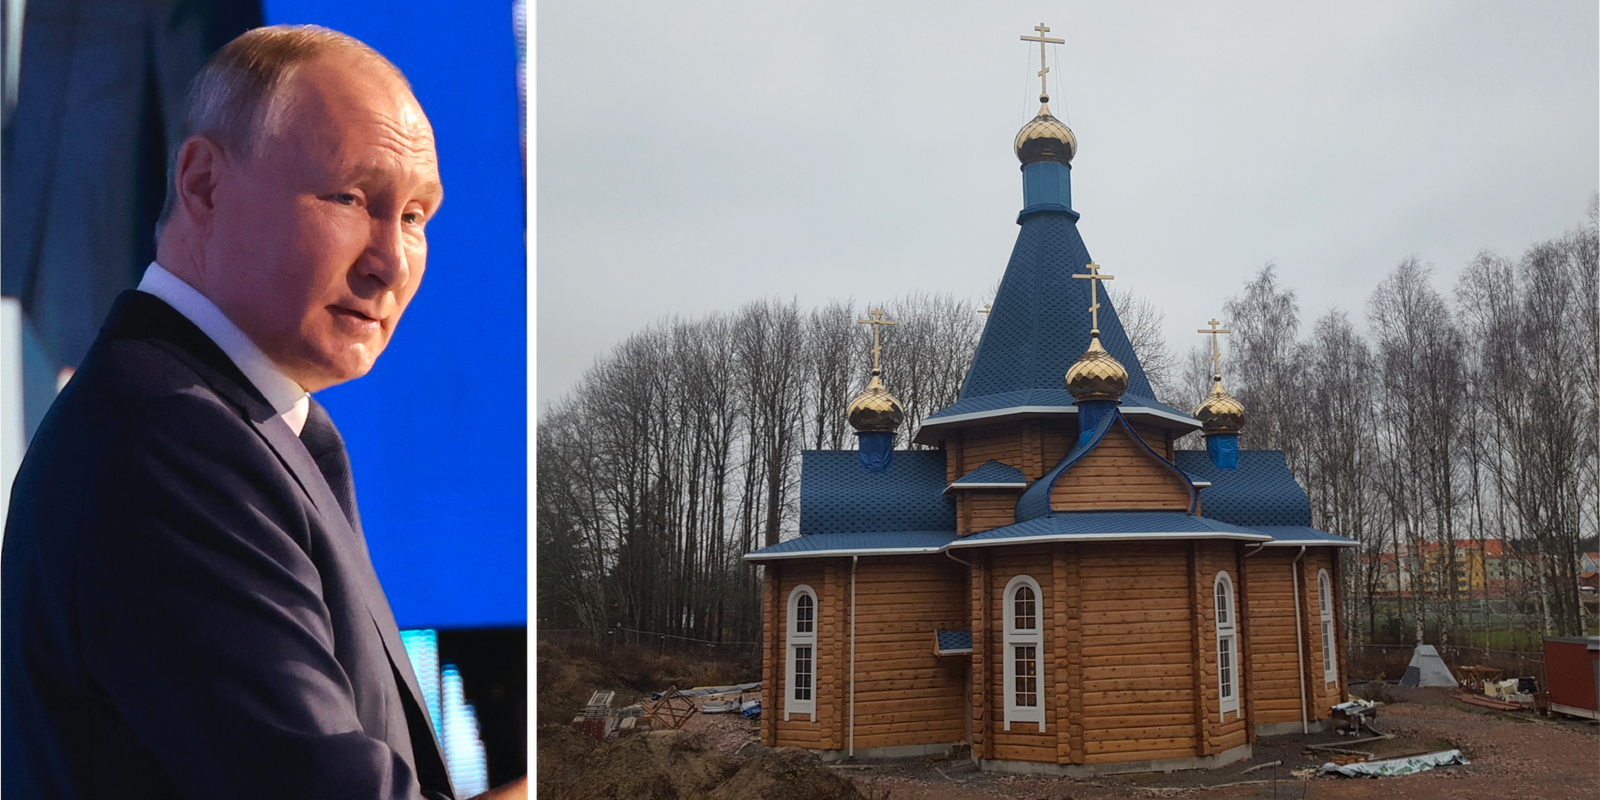 ryskt kärnkraftsbolag tog notan för kyrka i västerås – expert varnar för hybridhot